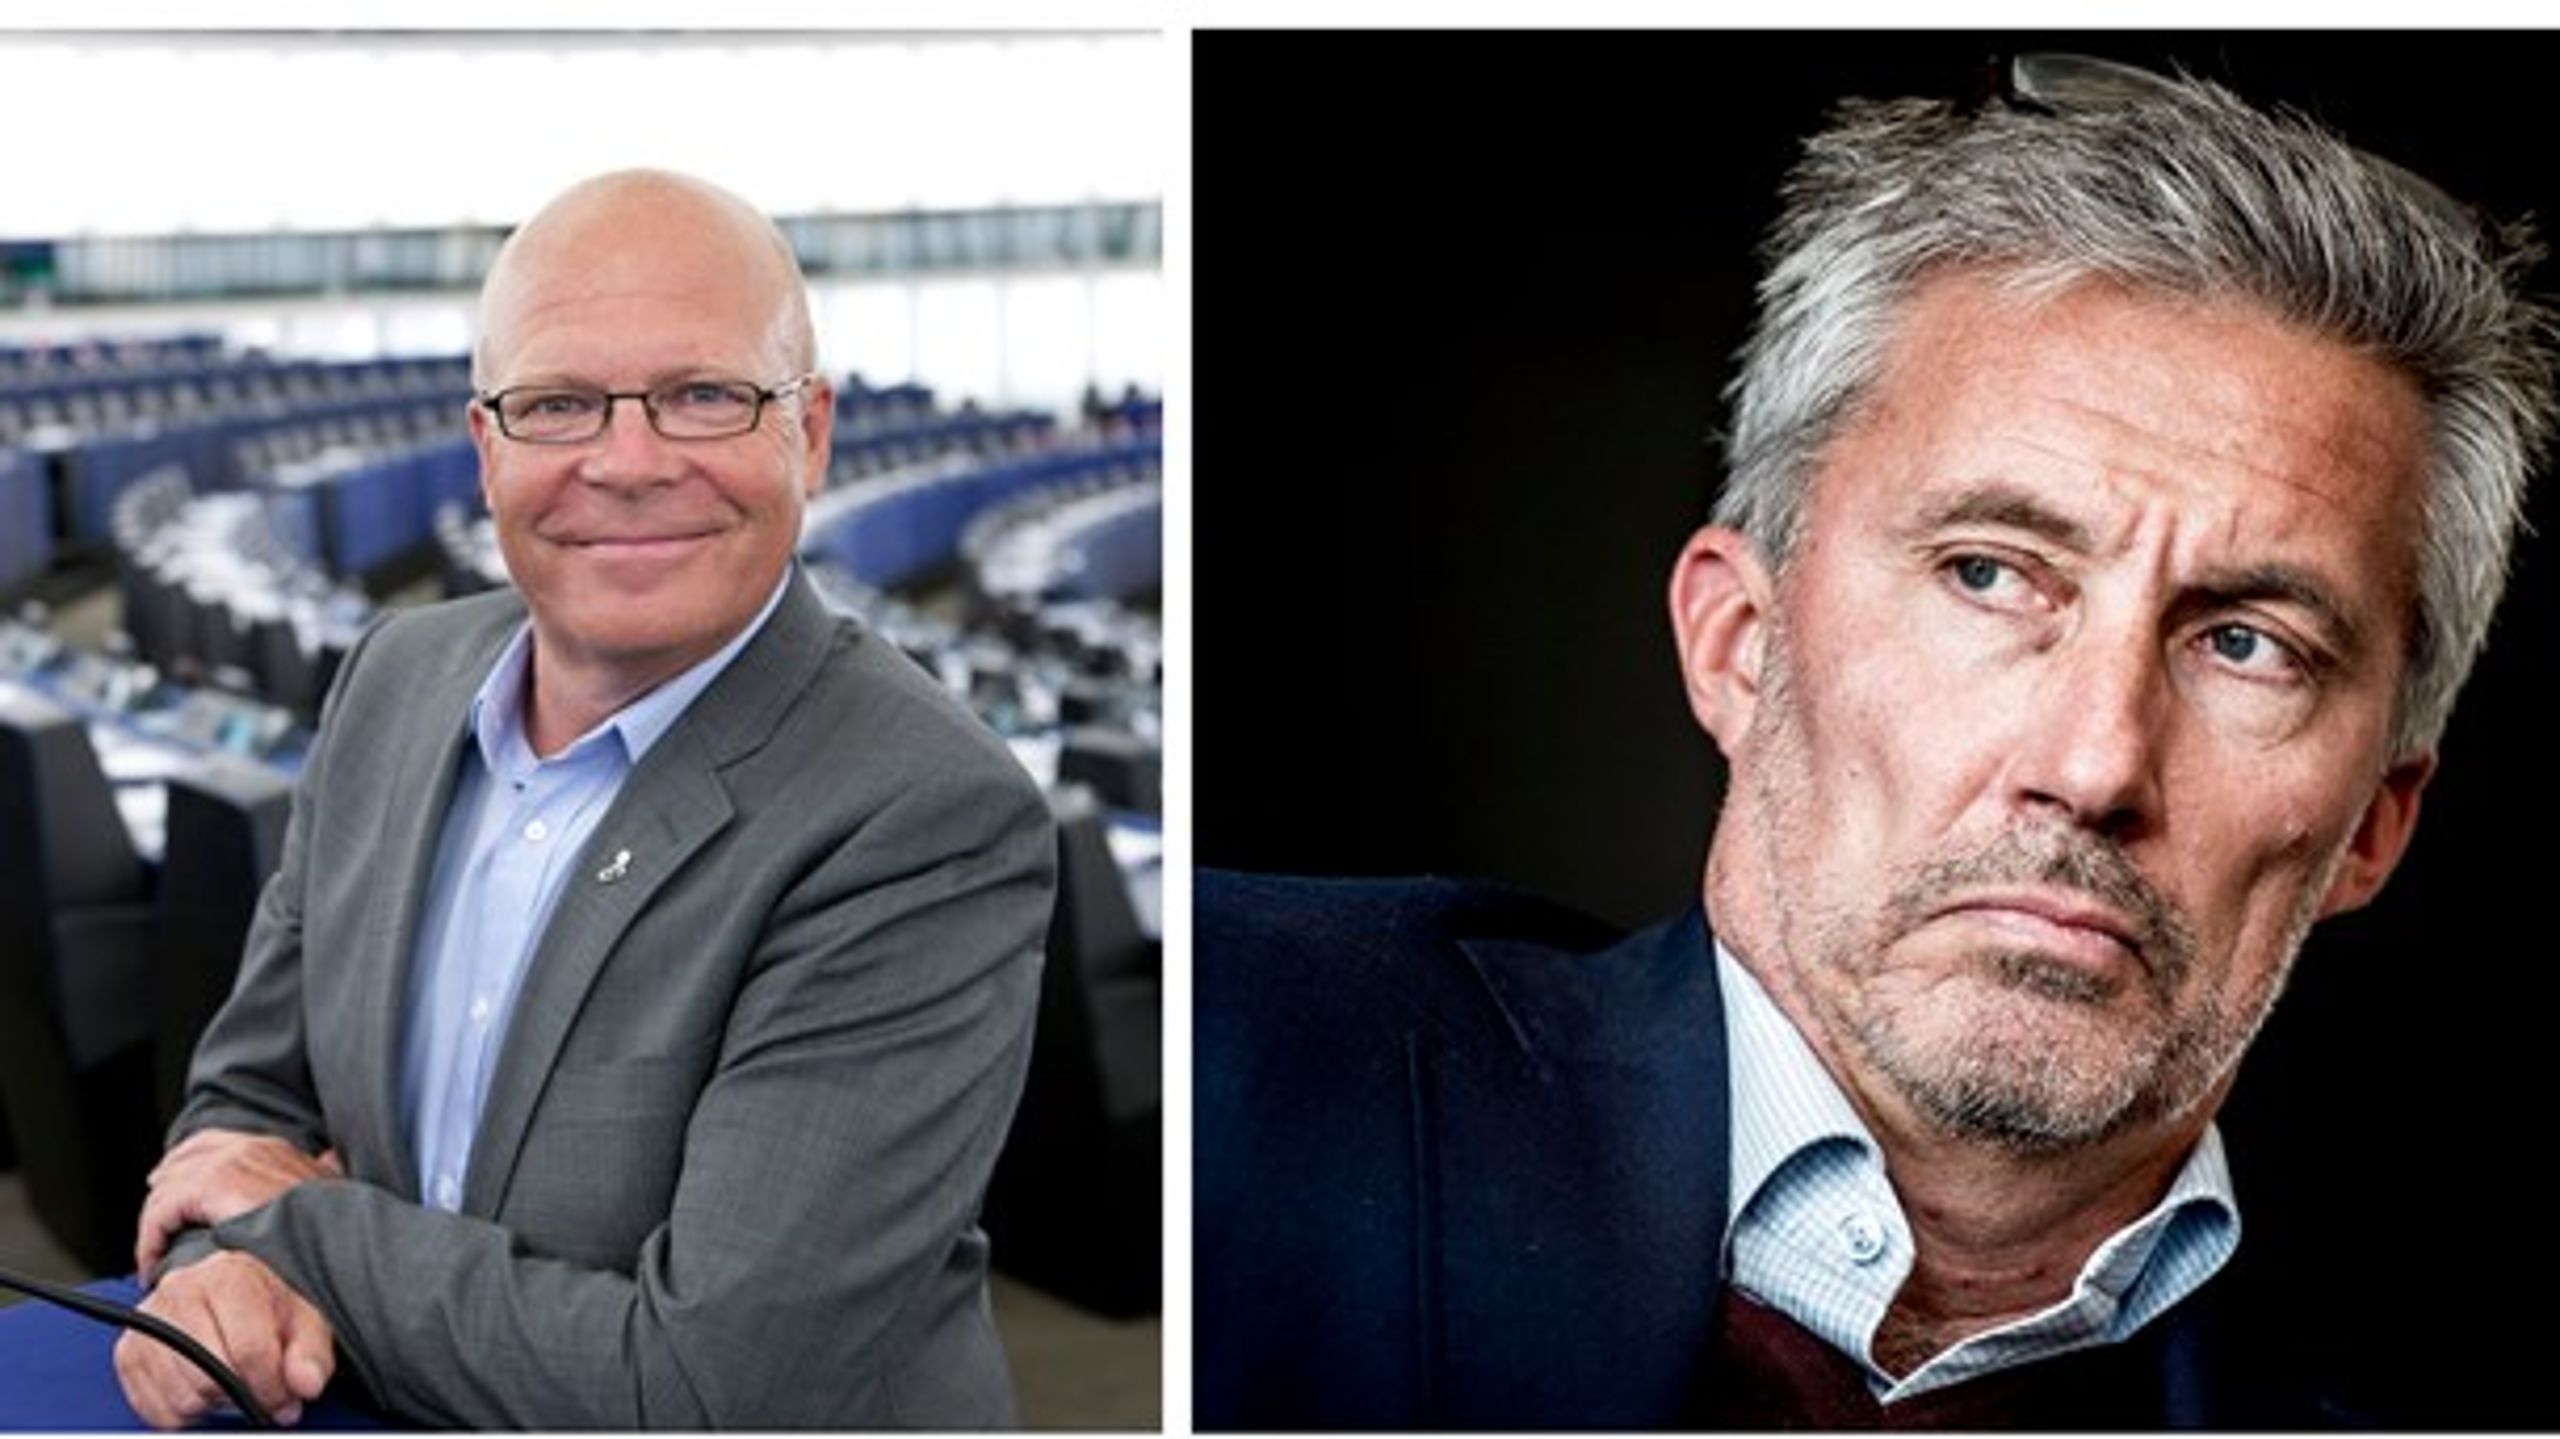 Ole Christensen (S) kritiserer Morten Løkkegaard (V) for at forlade vigtigt udvalg, som behandlede forslag om&nbsp;sociale sikringsydelser i EU, herunder dagpenge, og efterfølgende beskylde&nbsp;udvalg for at være&nbsp; 'venstreorienteret'.